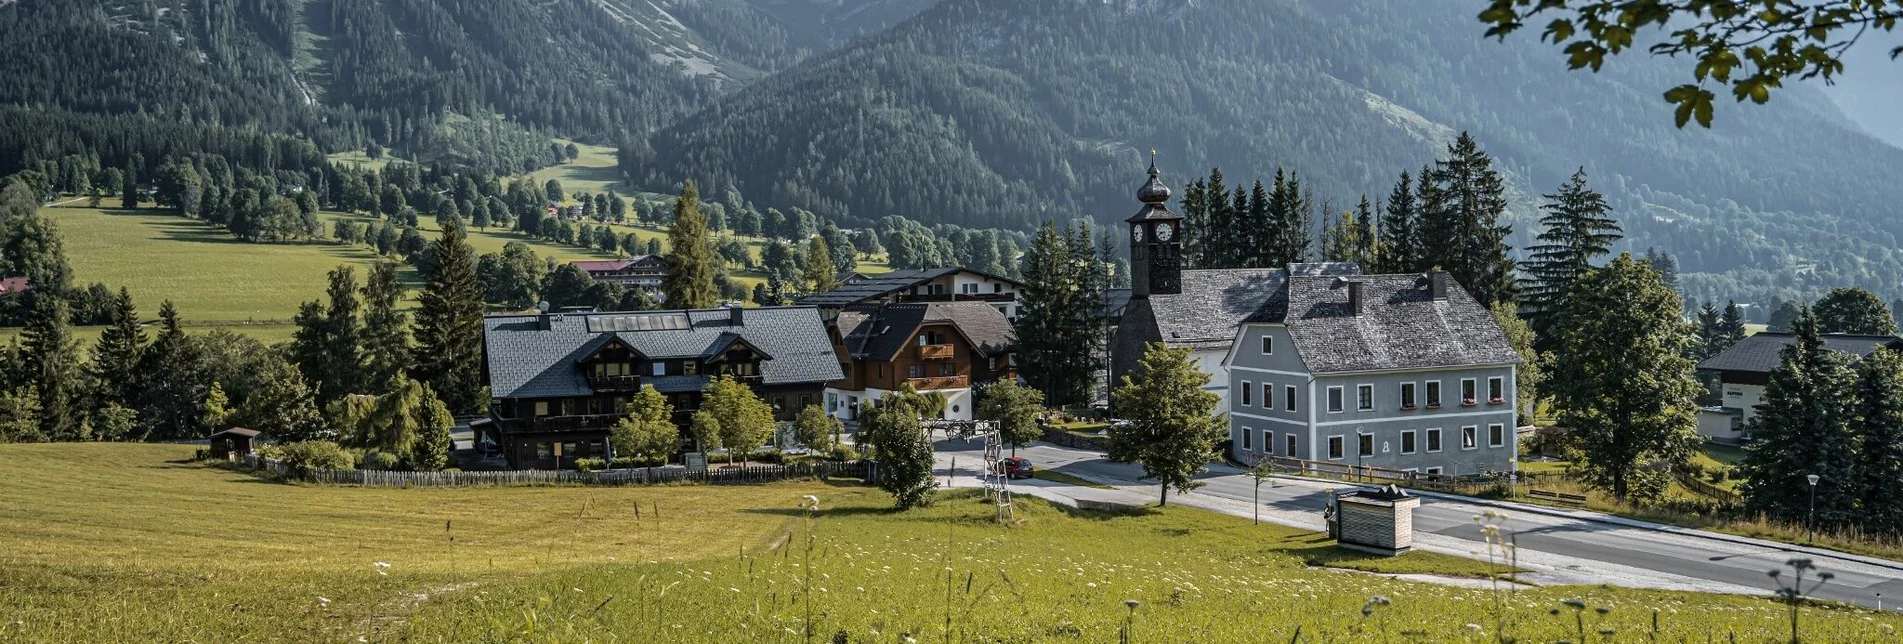 Wanderung Dorfrundweg Ramsau - Touren-Impression #1 | © Erlebnisregion Schladming-Dachstein